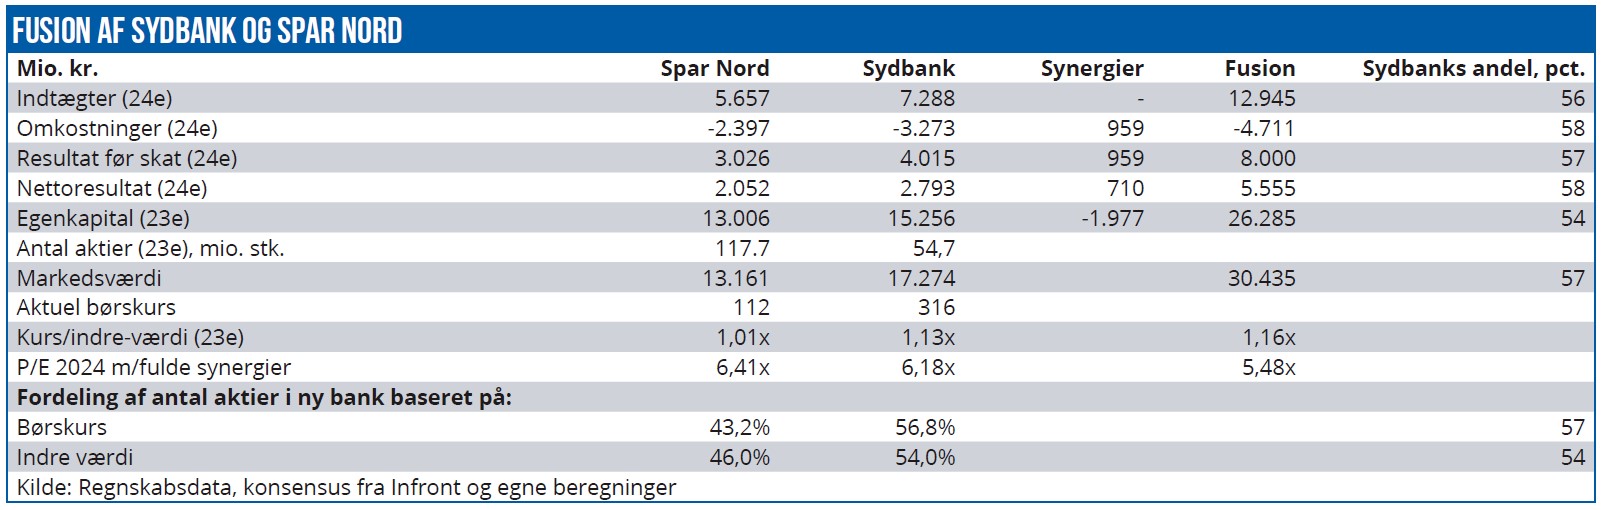 Fusion af Sydbank og Spar Nord